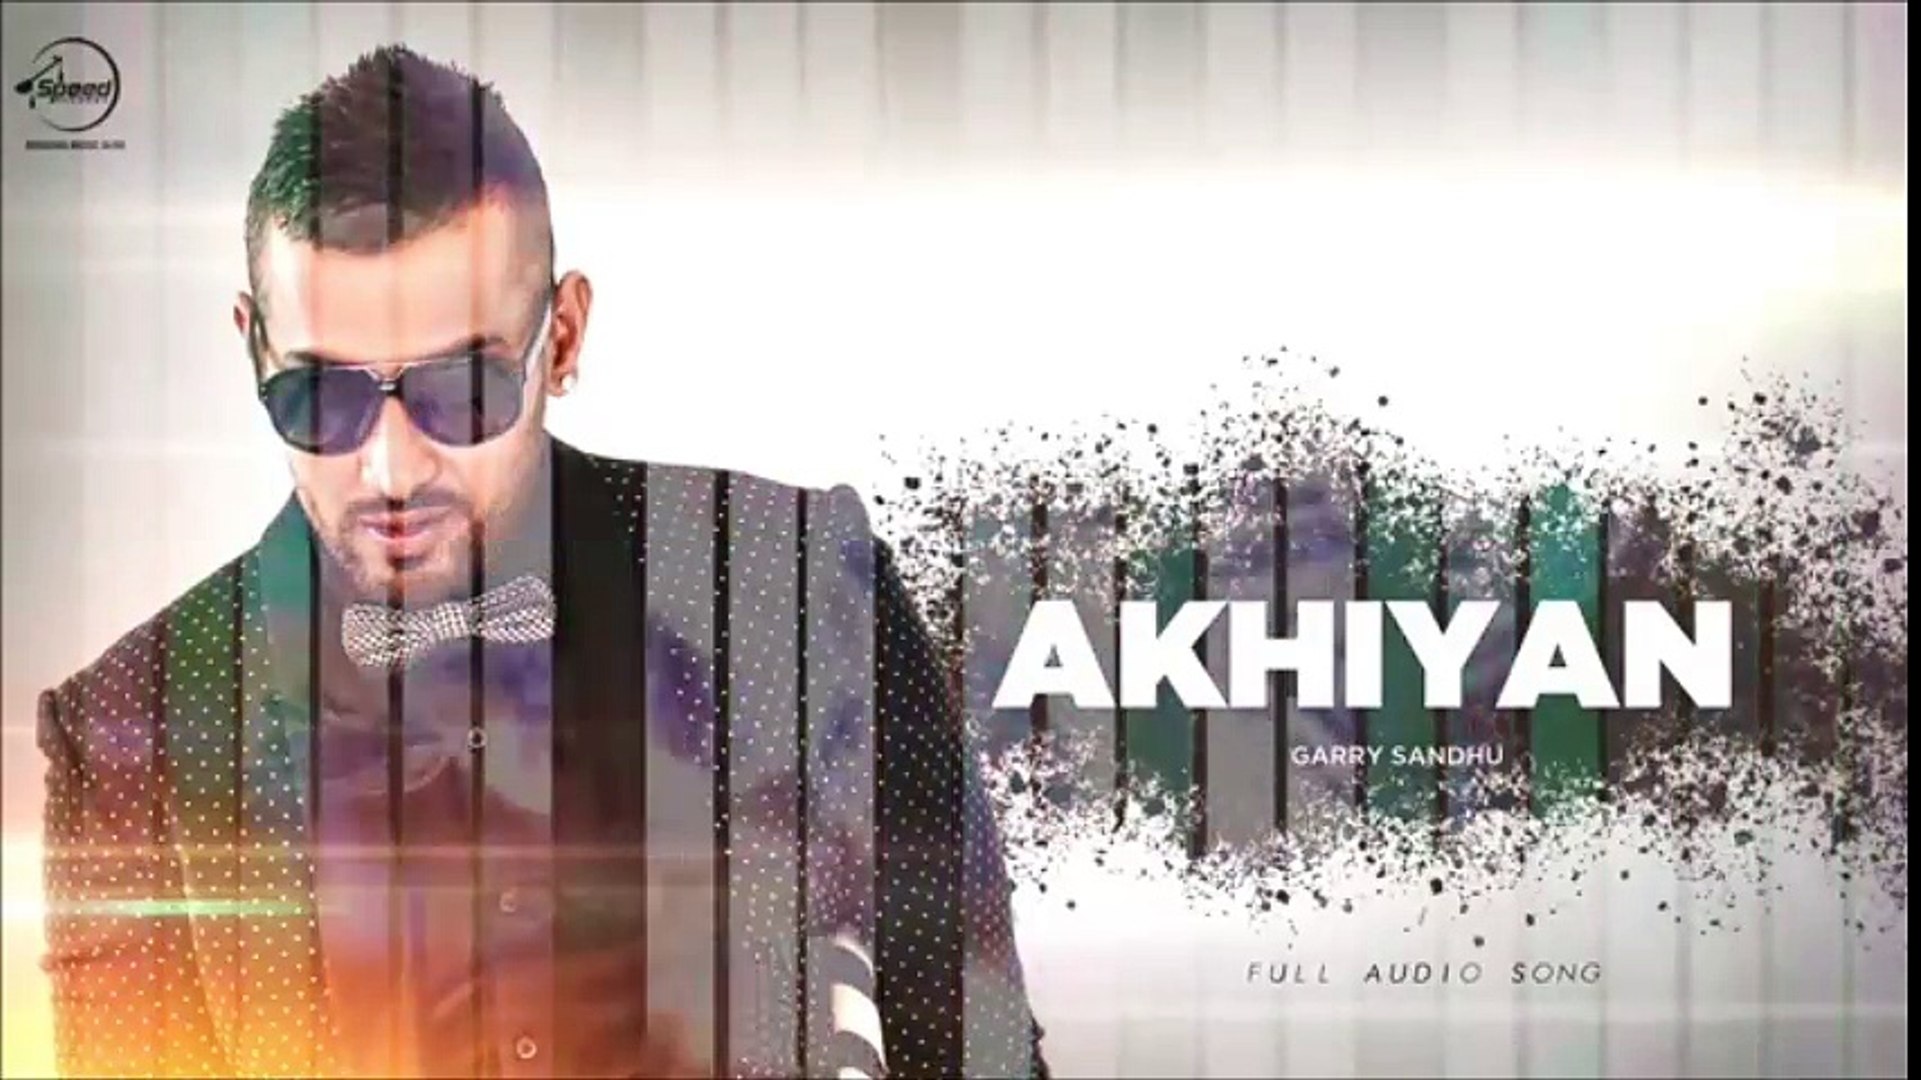 Akhiyan New Song Full Audio New Punjabi Song Garry Sandhu Latest Song 2016 Official Music Music Masti Dailymotion Video Dailymotion Paani akhiyan da full song paani akhiyan da. dailymotion